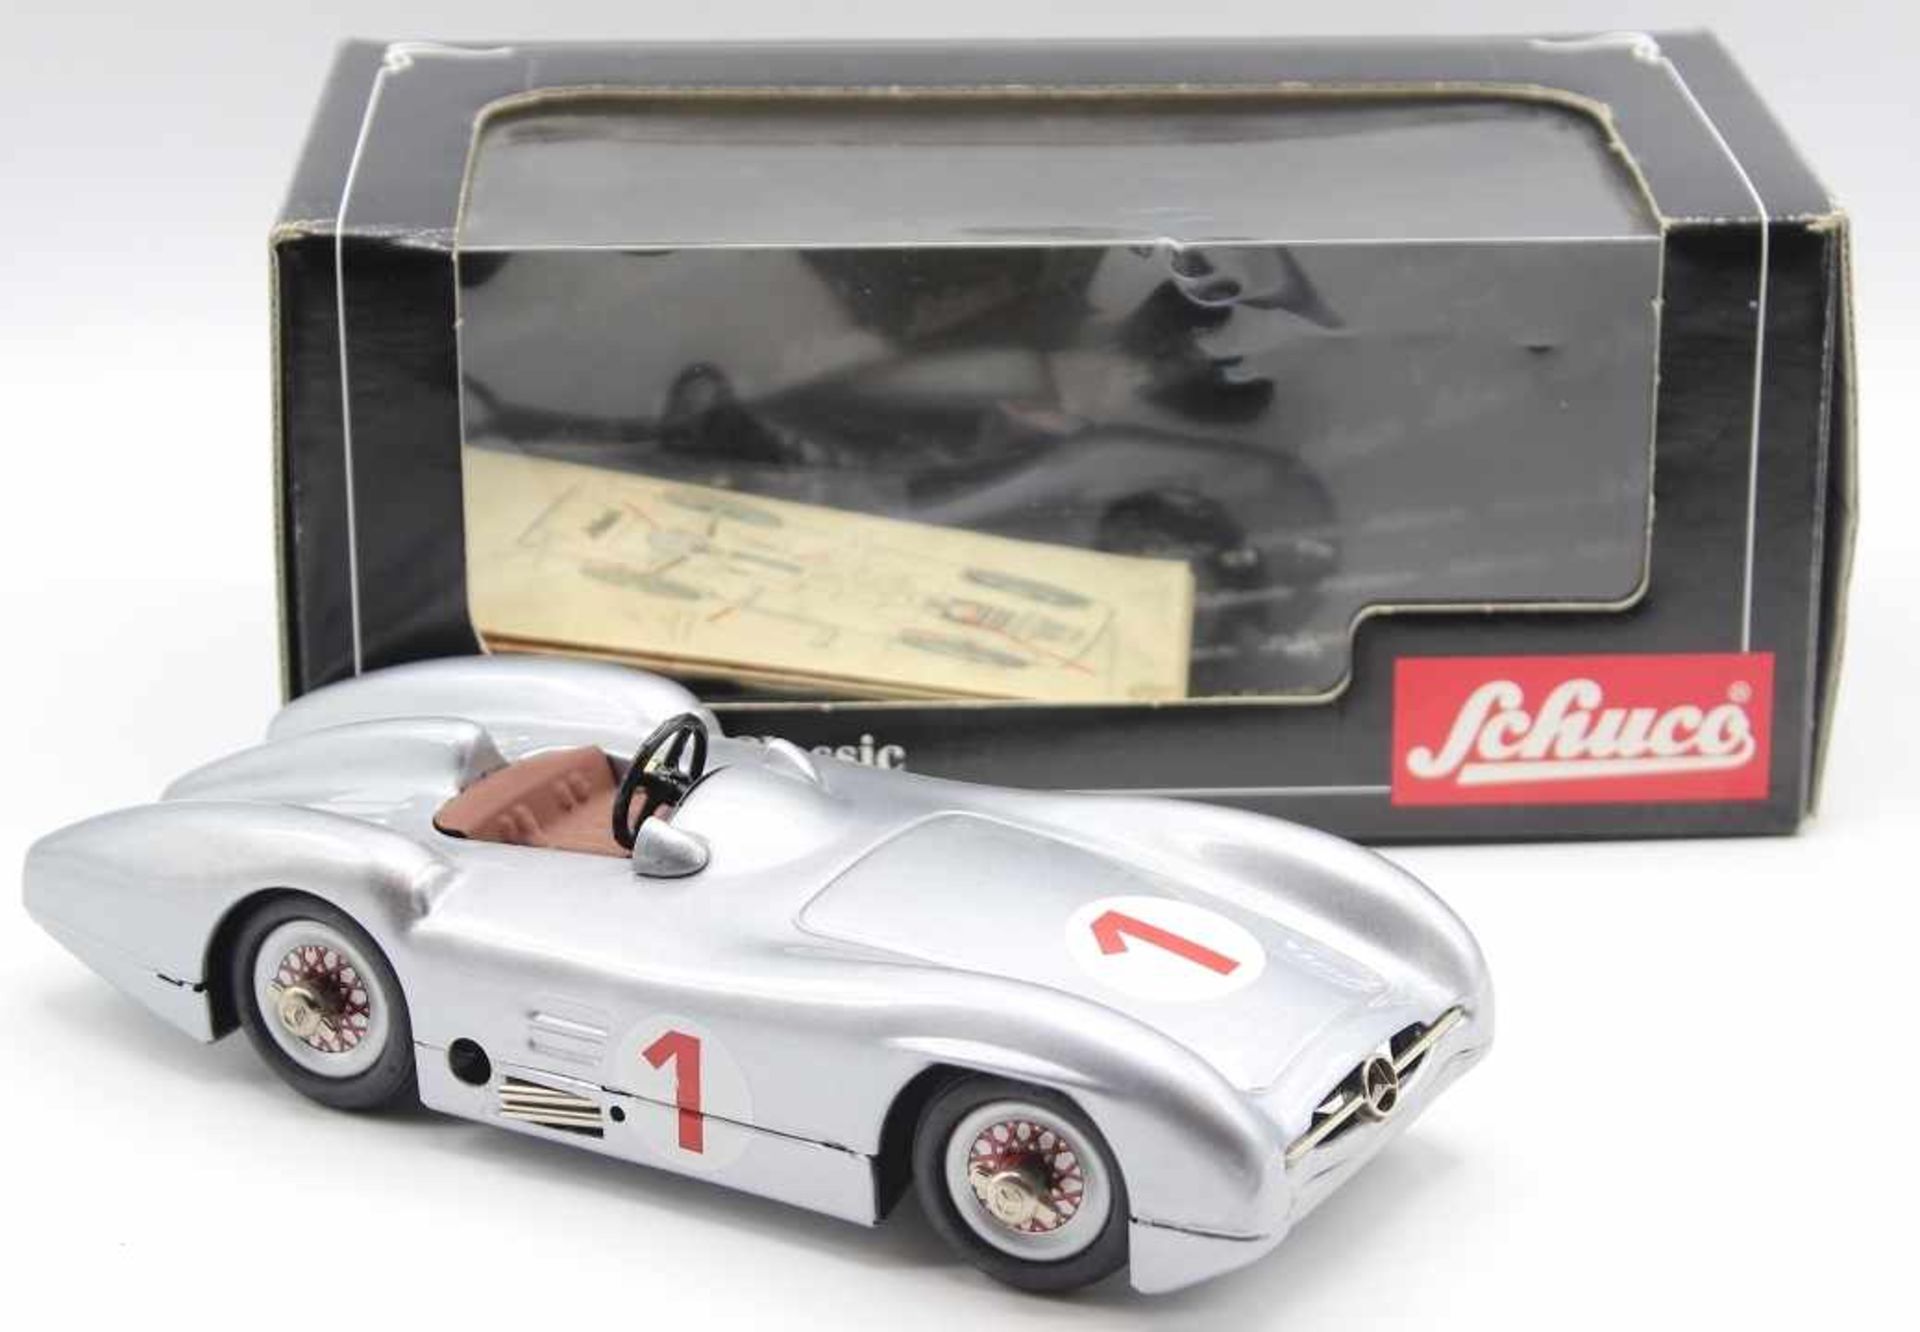 Spielzeug - Marke Schuco Mercedes Stromlinie W196, Nr. 01640, Metall, Länge 20 cm, anbei Karton